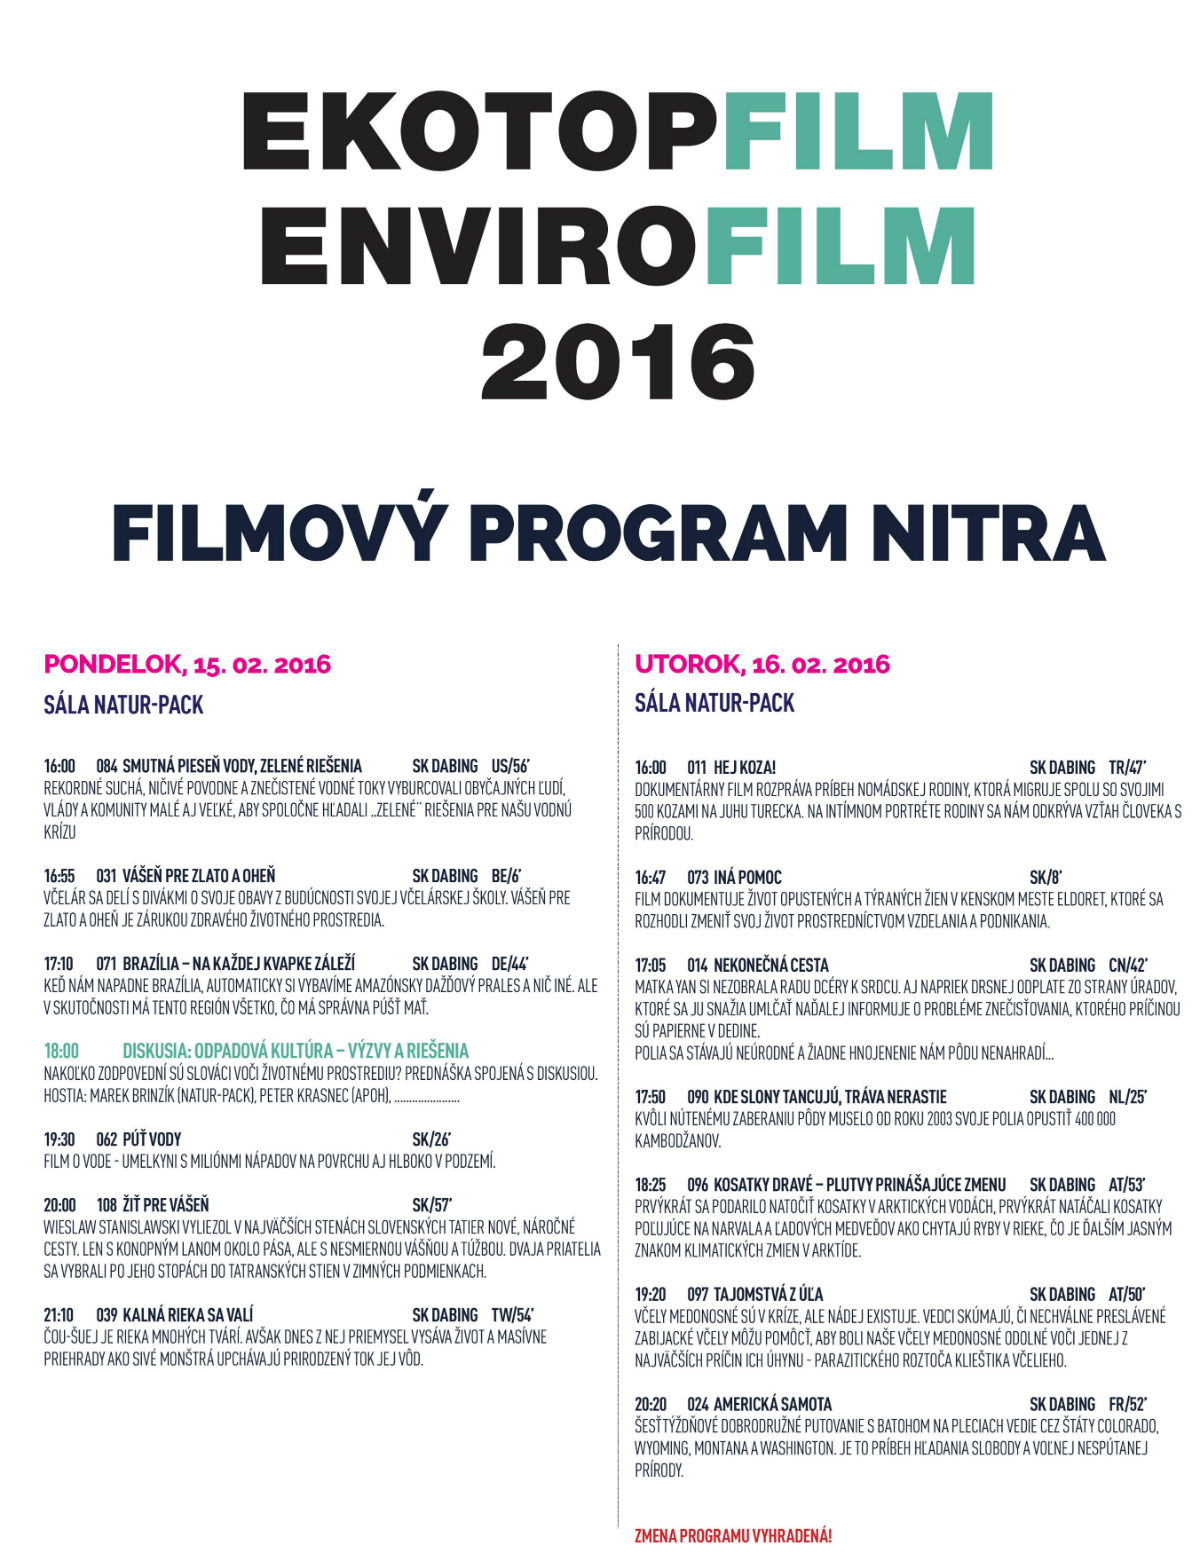 Ekotopfilm Nitra 2016 program